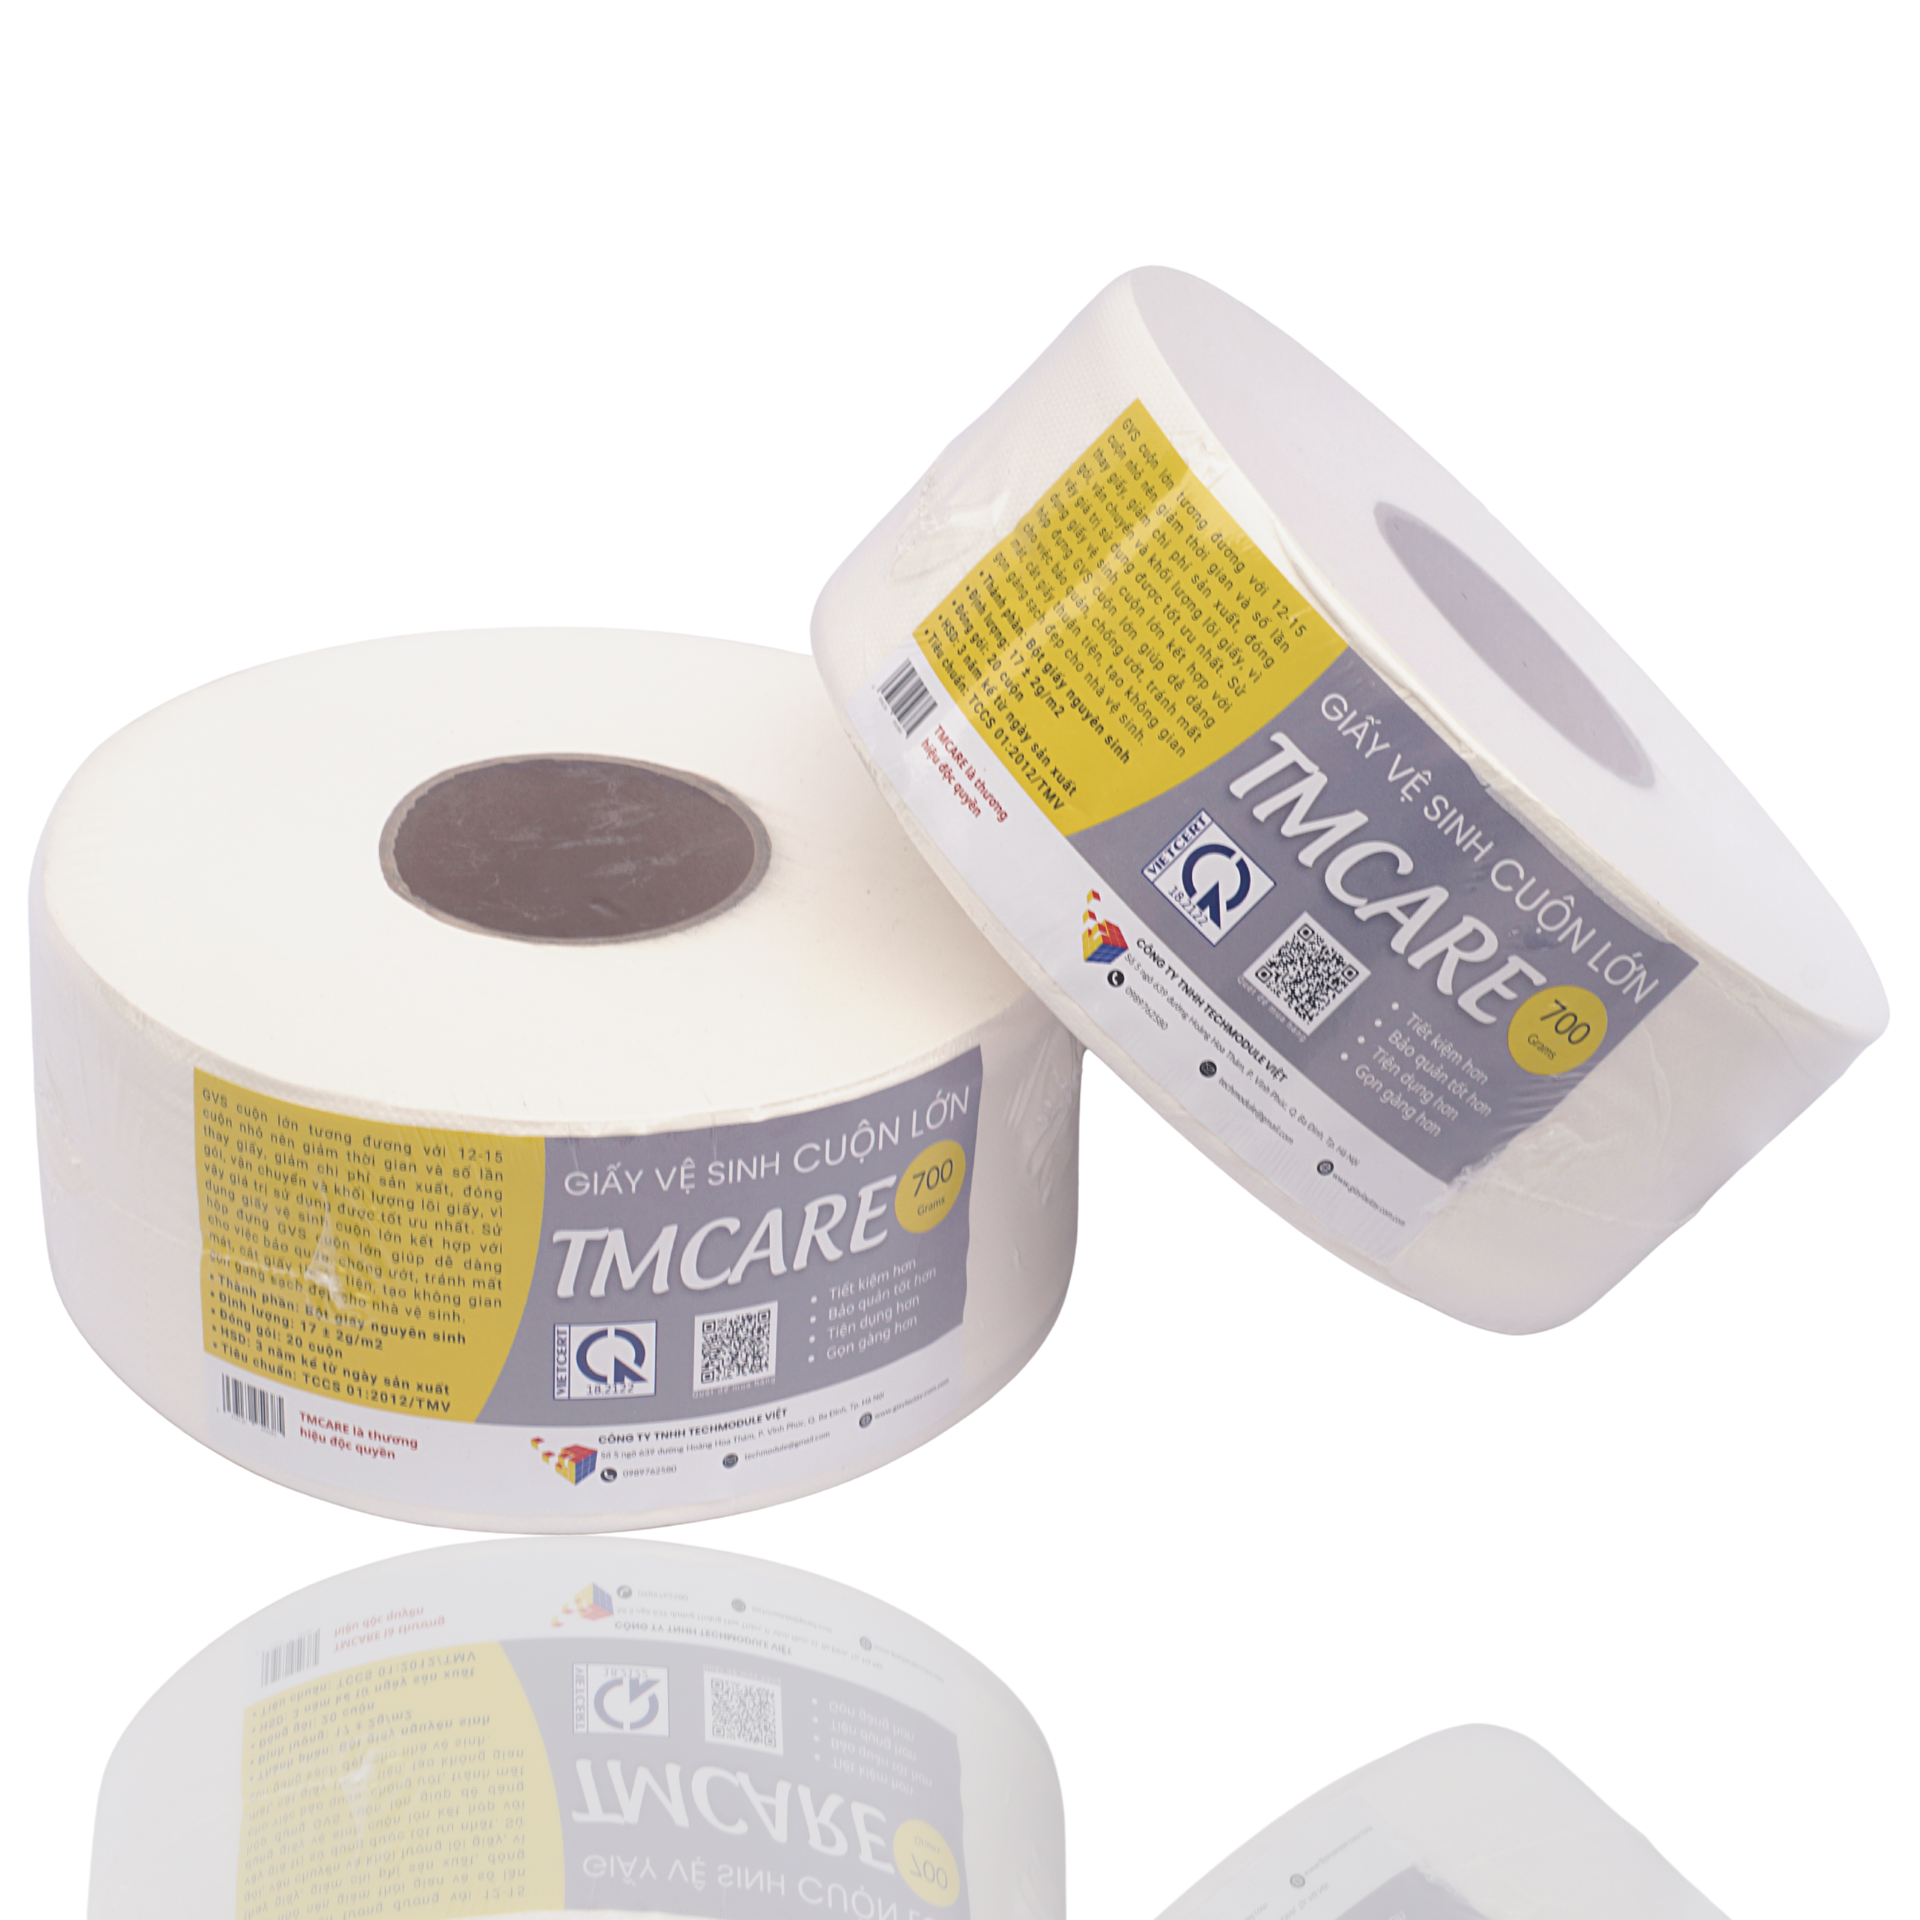 Thử nghiệm và đánh giá: Cuộn giấy vệ sinh TMCare lớn từ TECHMODULE - Tìm hiểu tại sao bạn không thể thiếu nó!